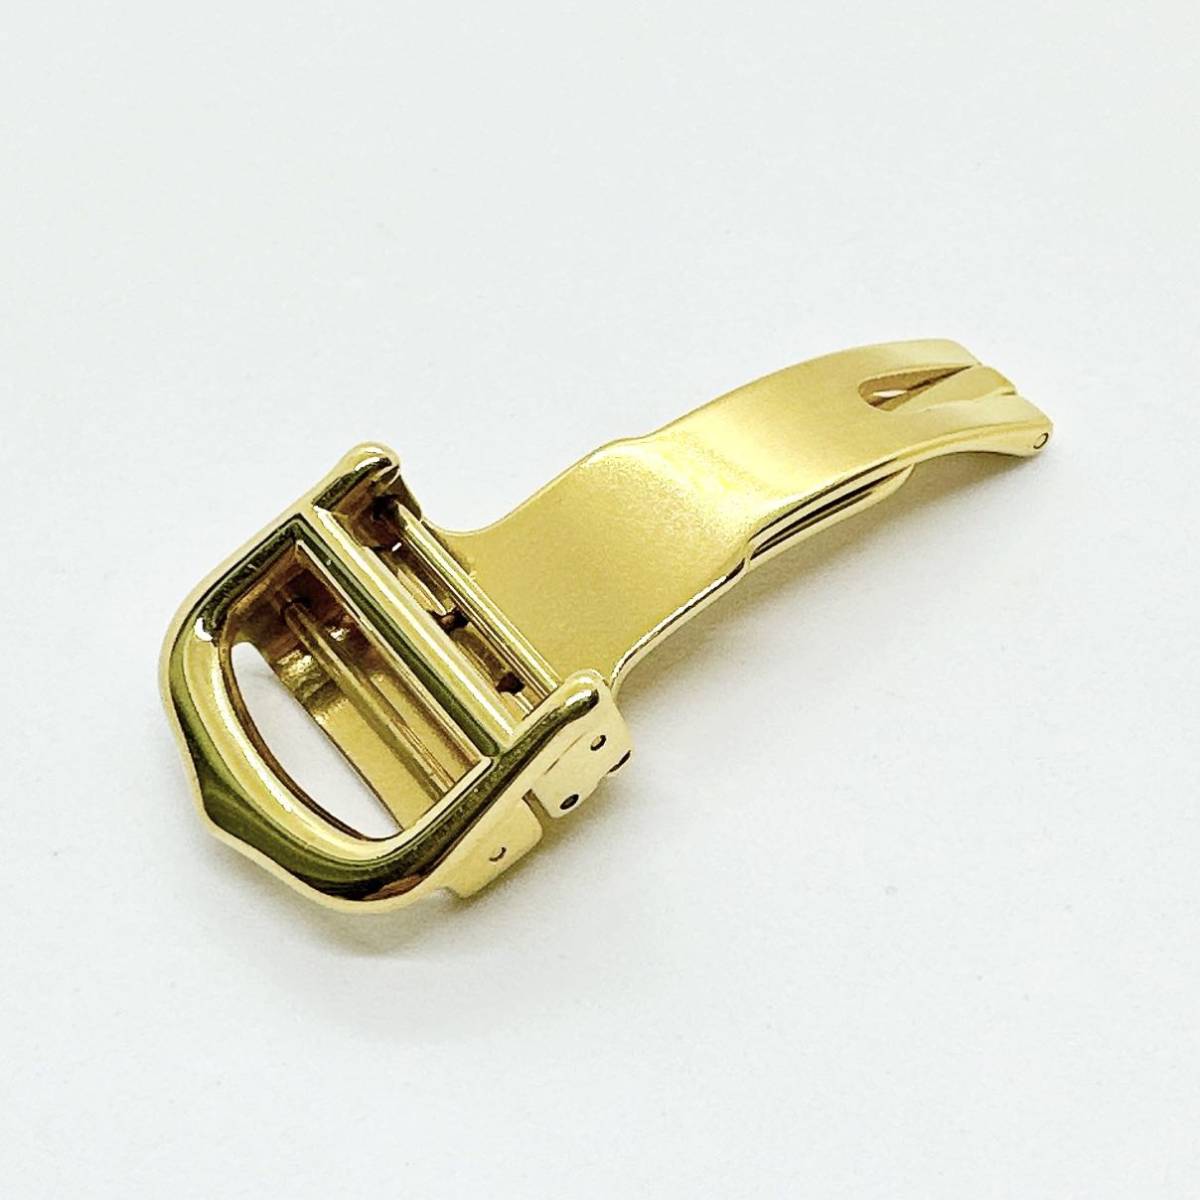 02033 カルティエ Cartier 純正 Dバックル 尾錠 14mm 腕時計 革ベルト用 SS ゴールドカラー